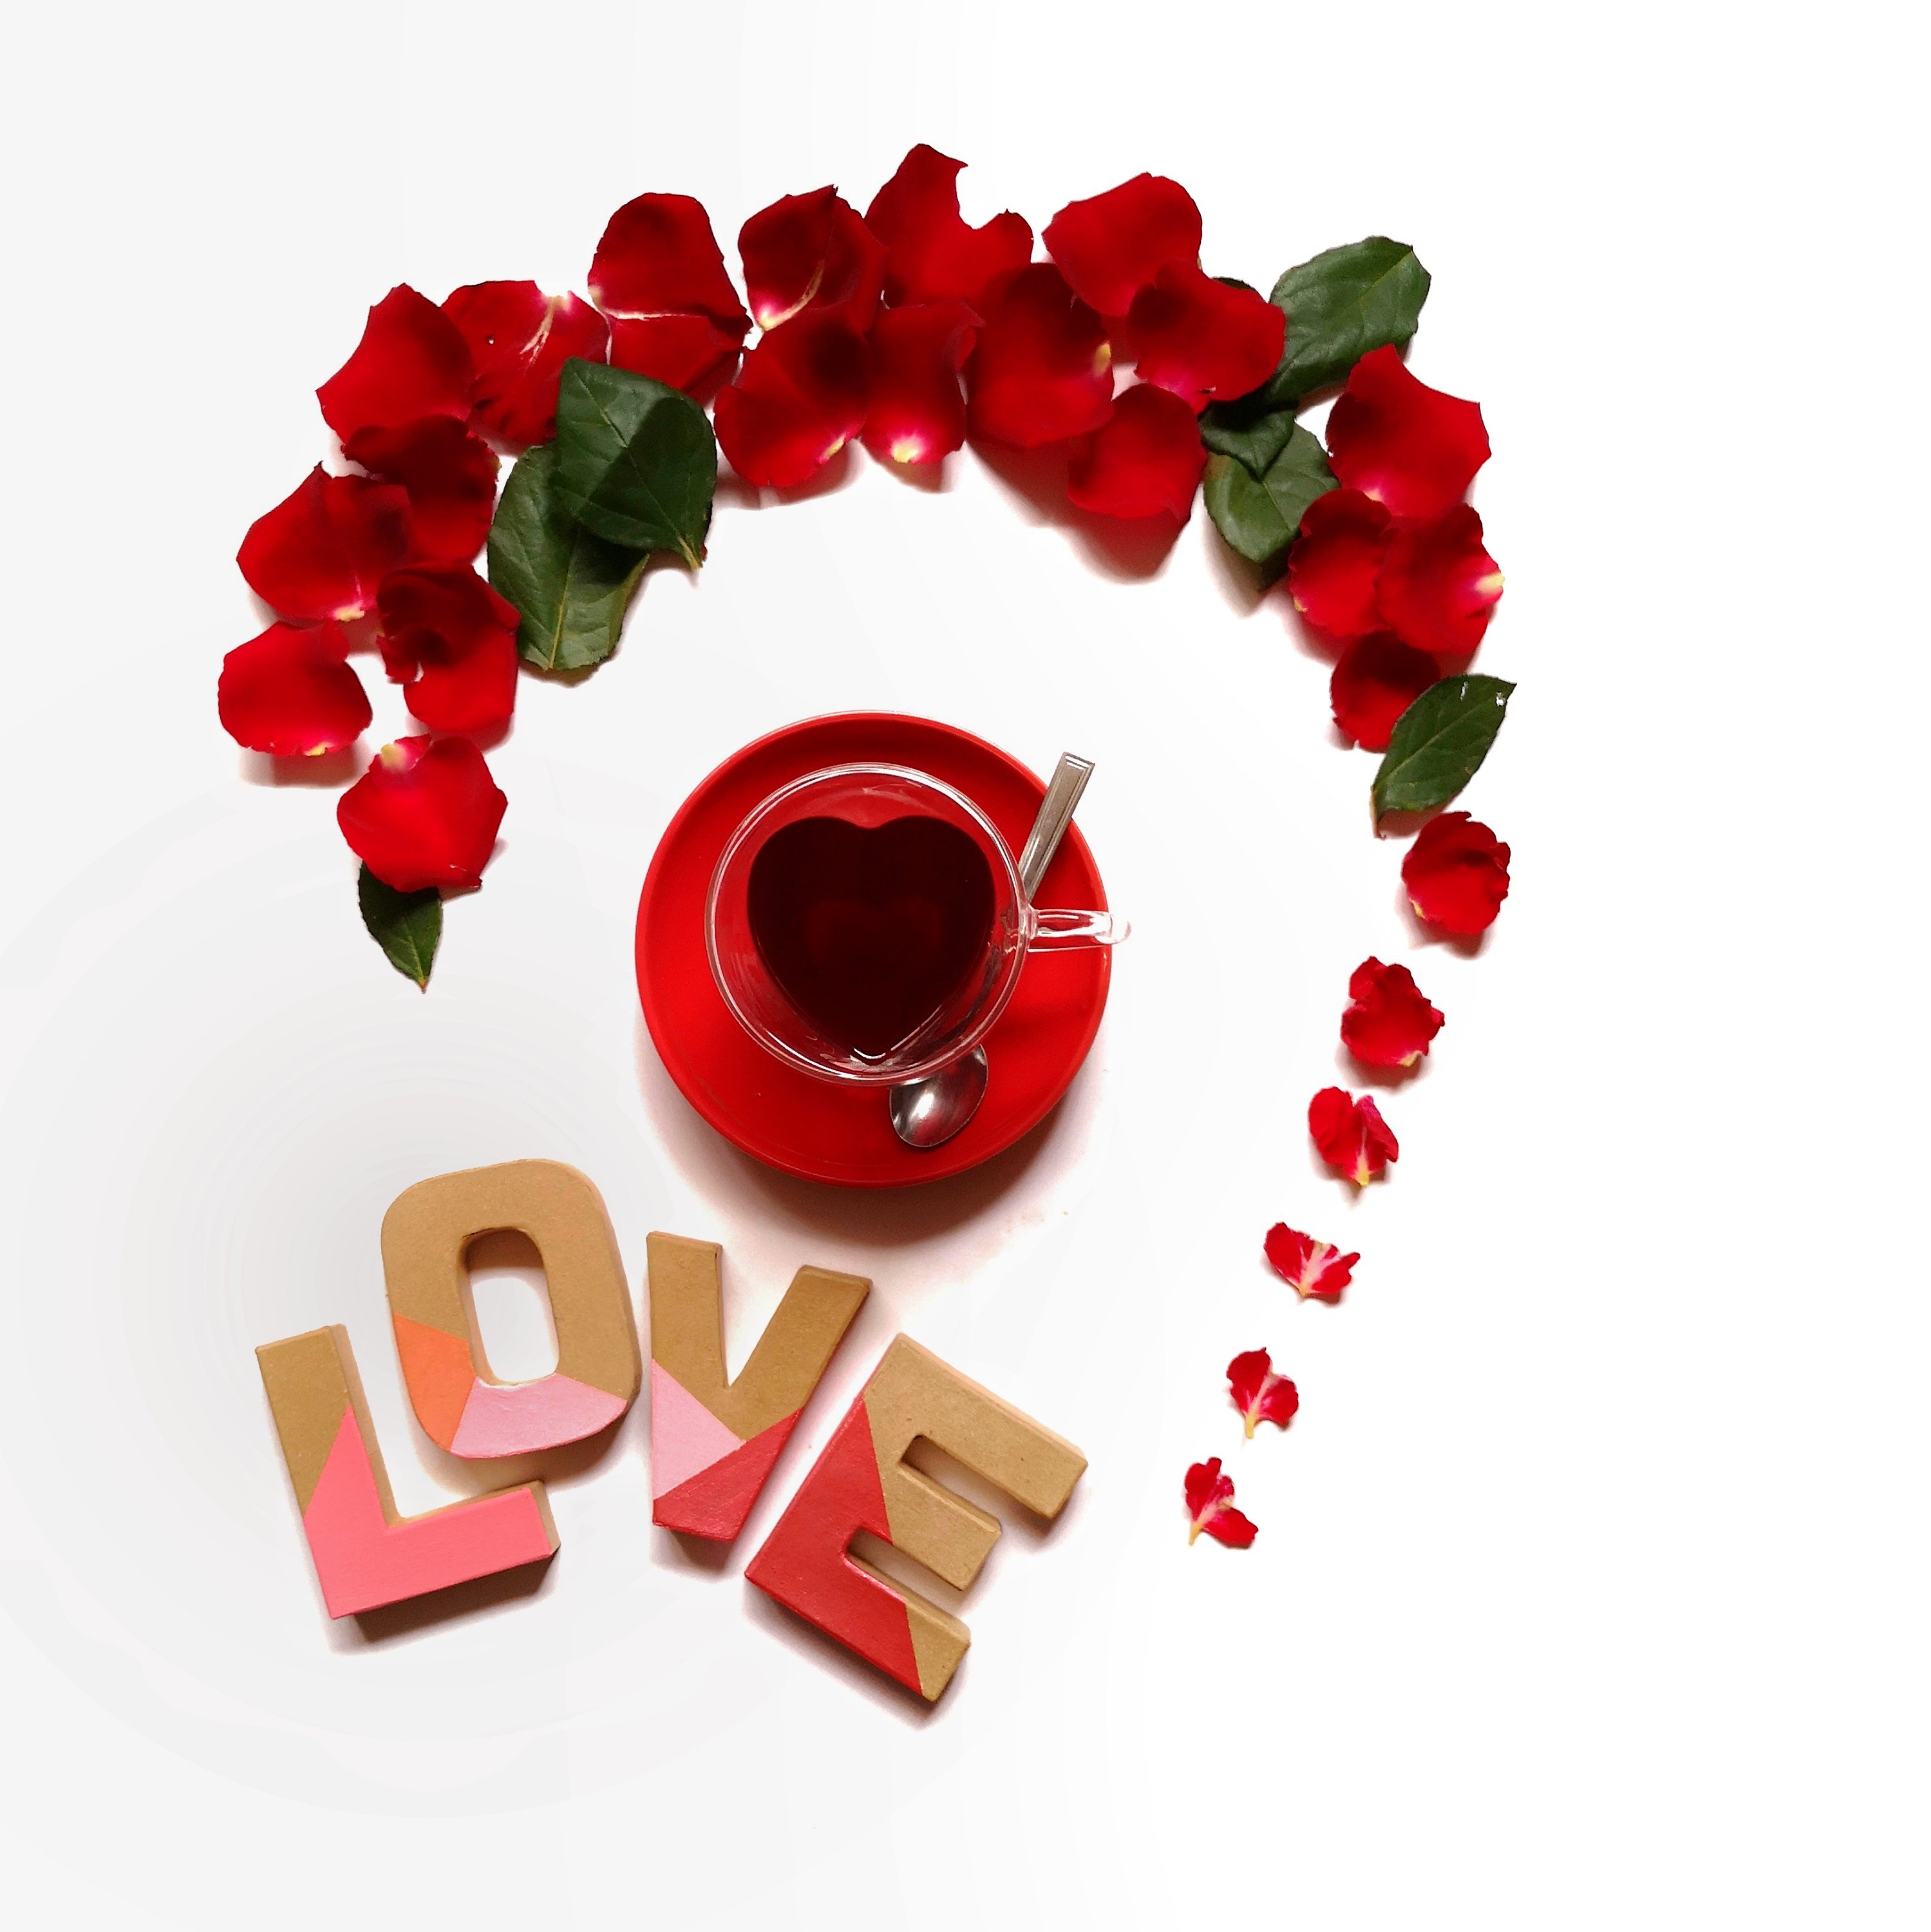 LOVE tea and rose petals